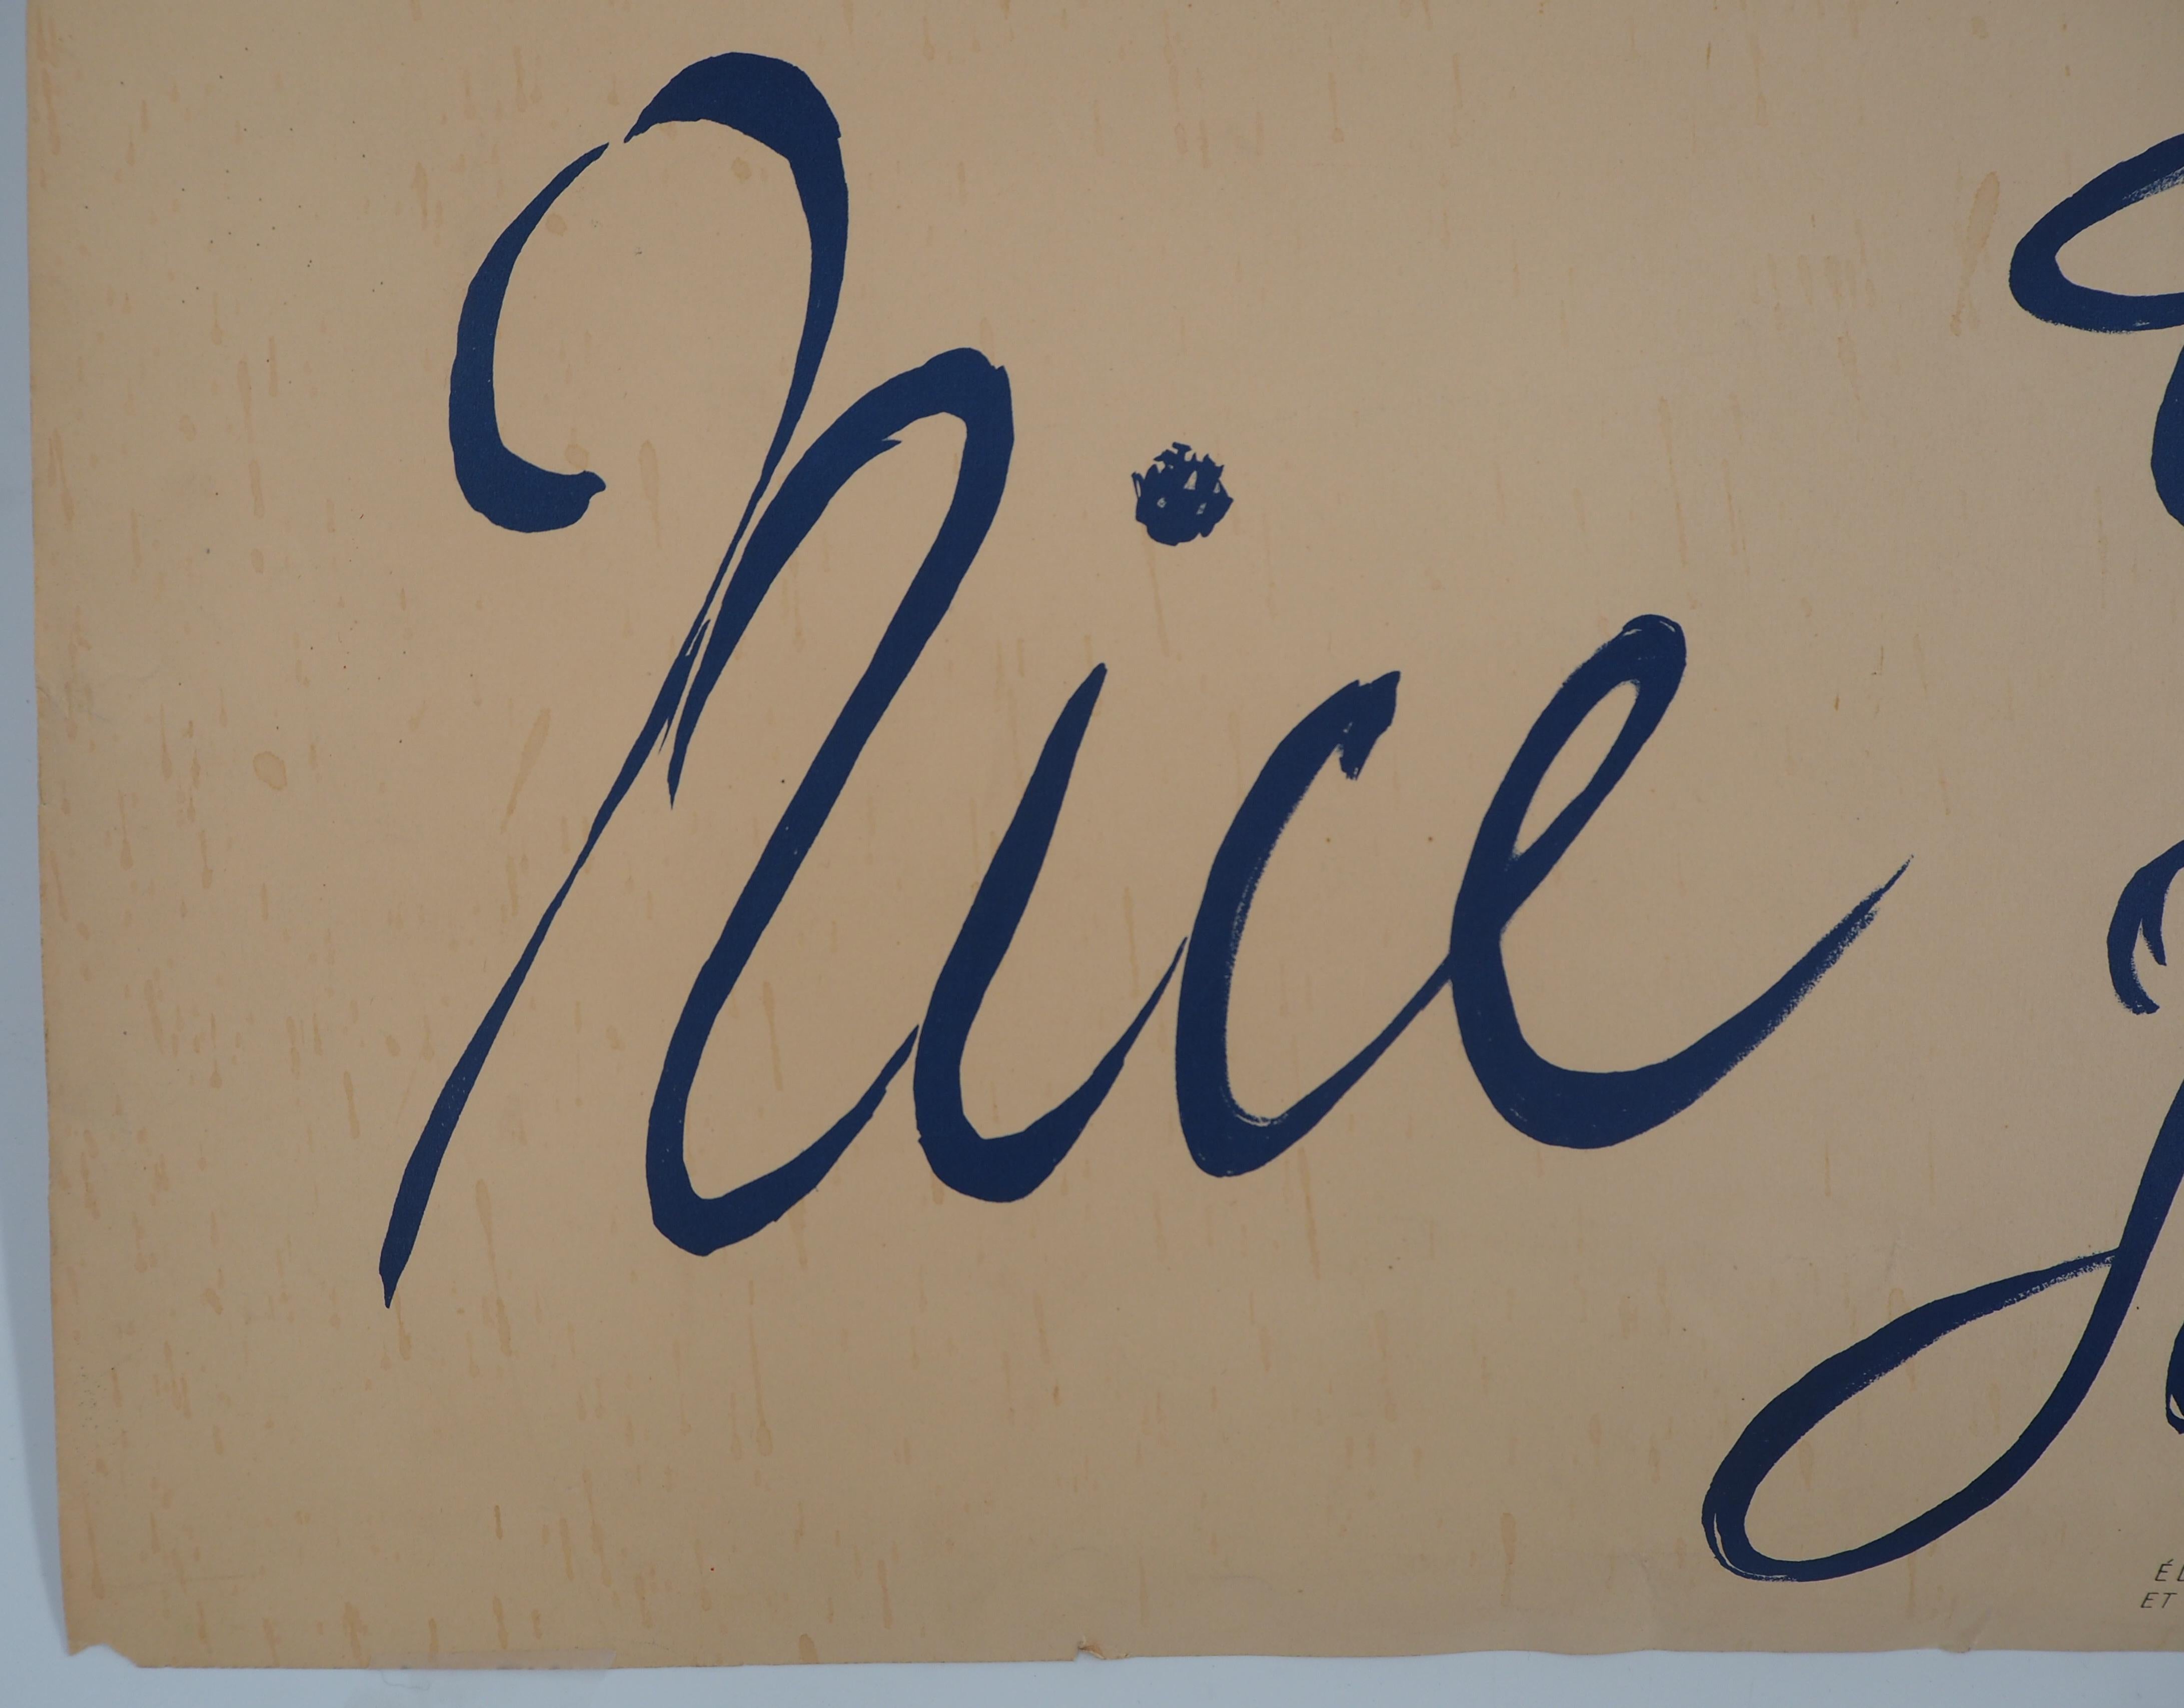 Henri MATISSE
Nice, Travail, Joie (French Riviera, Work & Joy), 1947

Original lithograph (Mourlot workshop)
Printed signature in the plate
On paper 100 x 64 cm (c. 40 x 26 in)

REFERENCES : Les affiches originales des Maitres de l'Ecole de Paris,